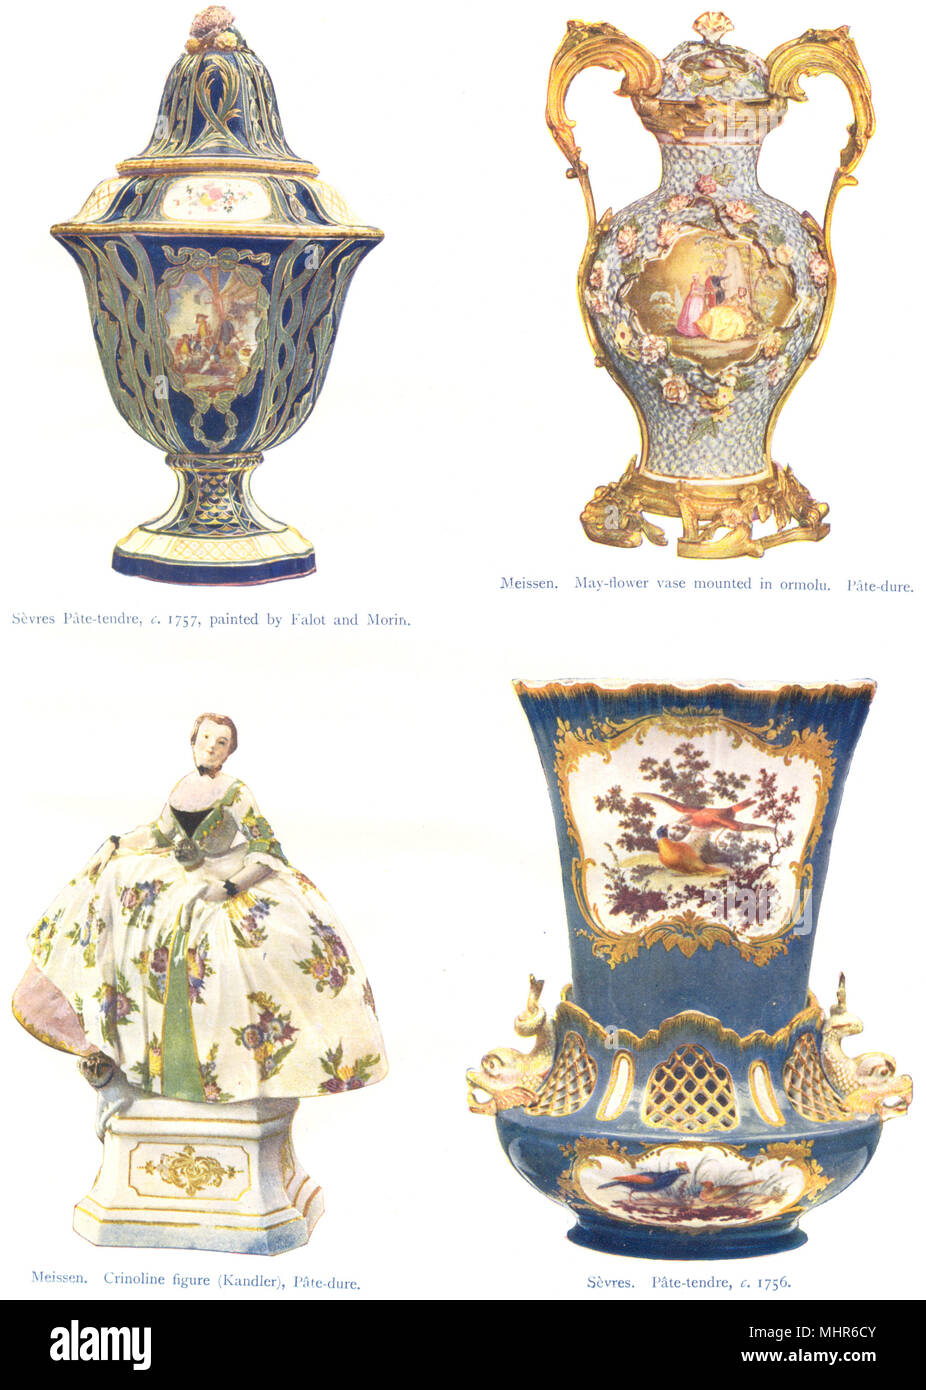 La cerámica. Sèvres;Pate-tendre dimiento 1756,Falot Morin;Meissen;Ormolu;Crinoline 1910 Foto de stock